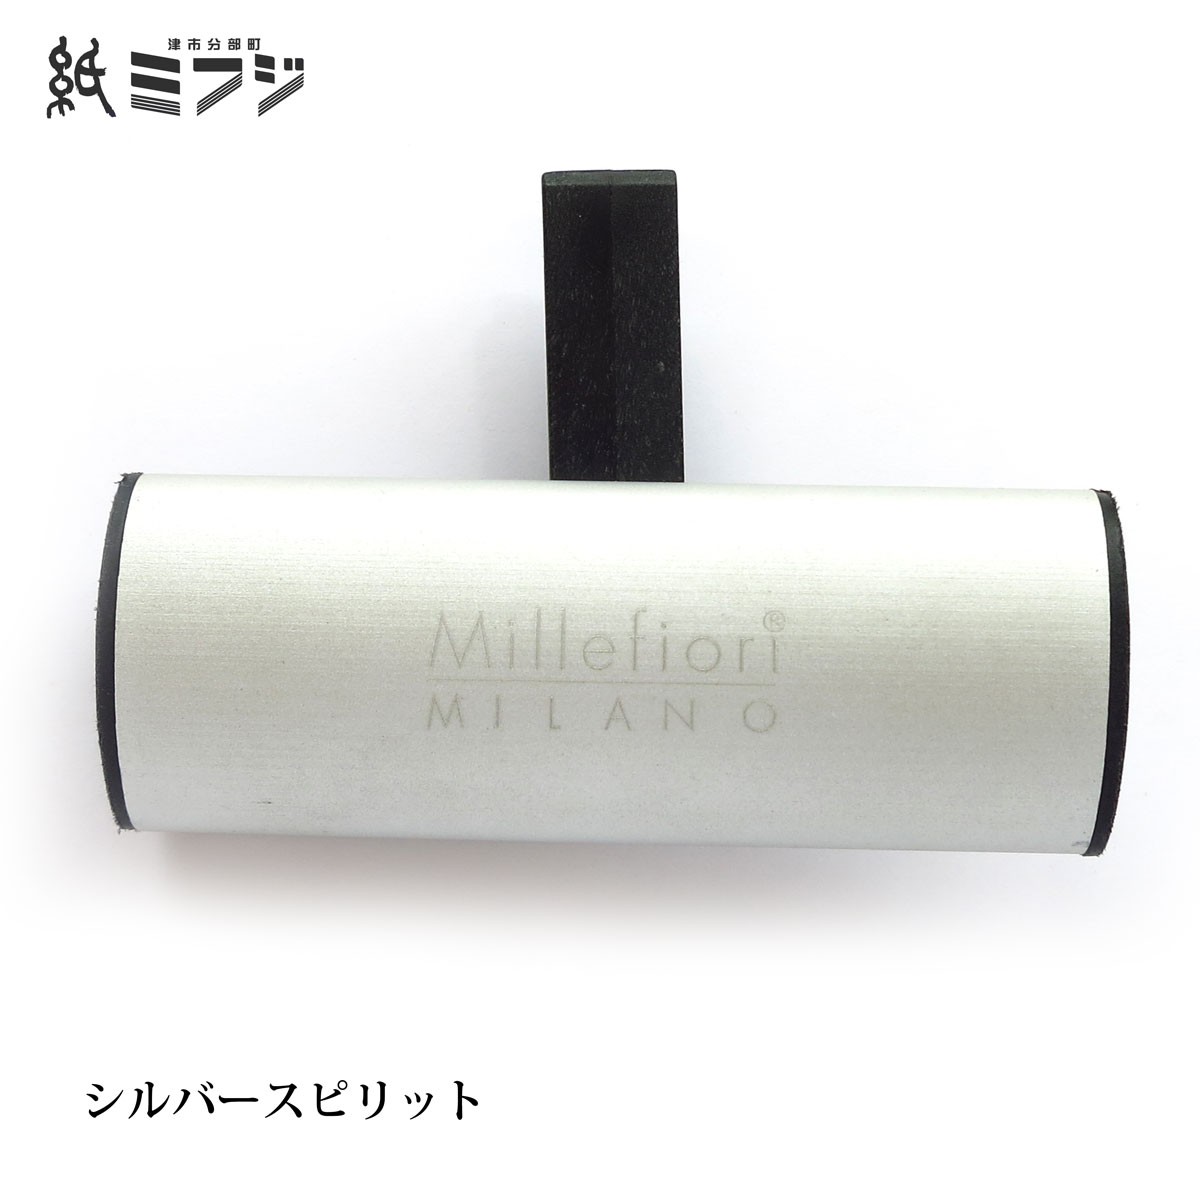 Millefiori ミッレフィオーリ カーフレグランス Classicクラシック 全8種類